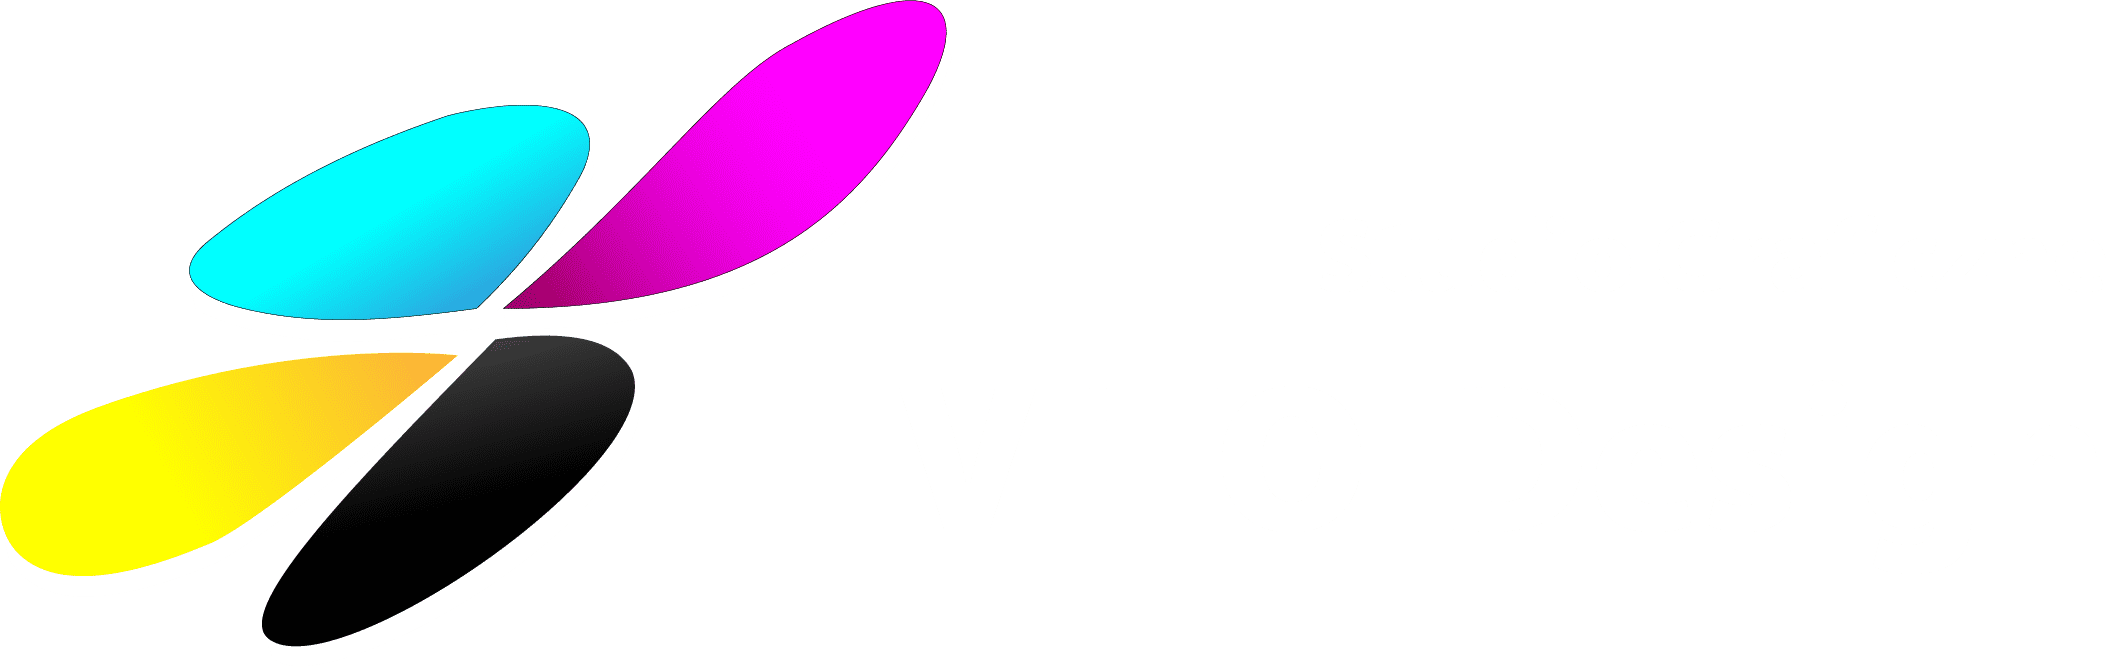 VITO-Design Studio graficzne